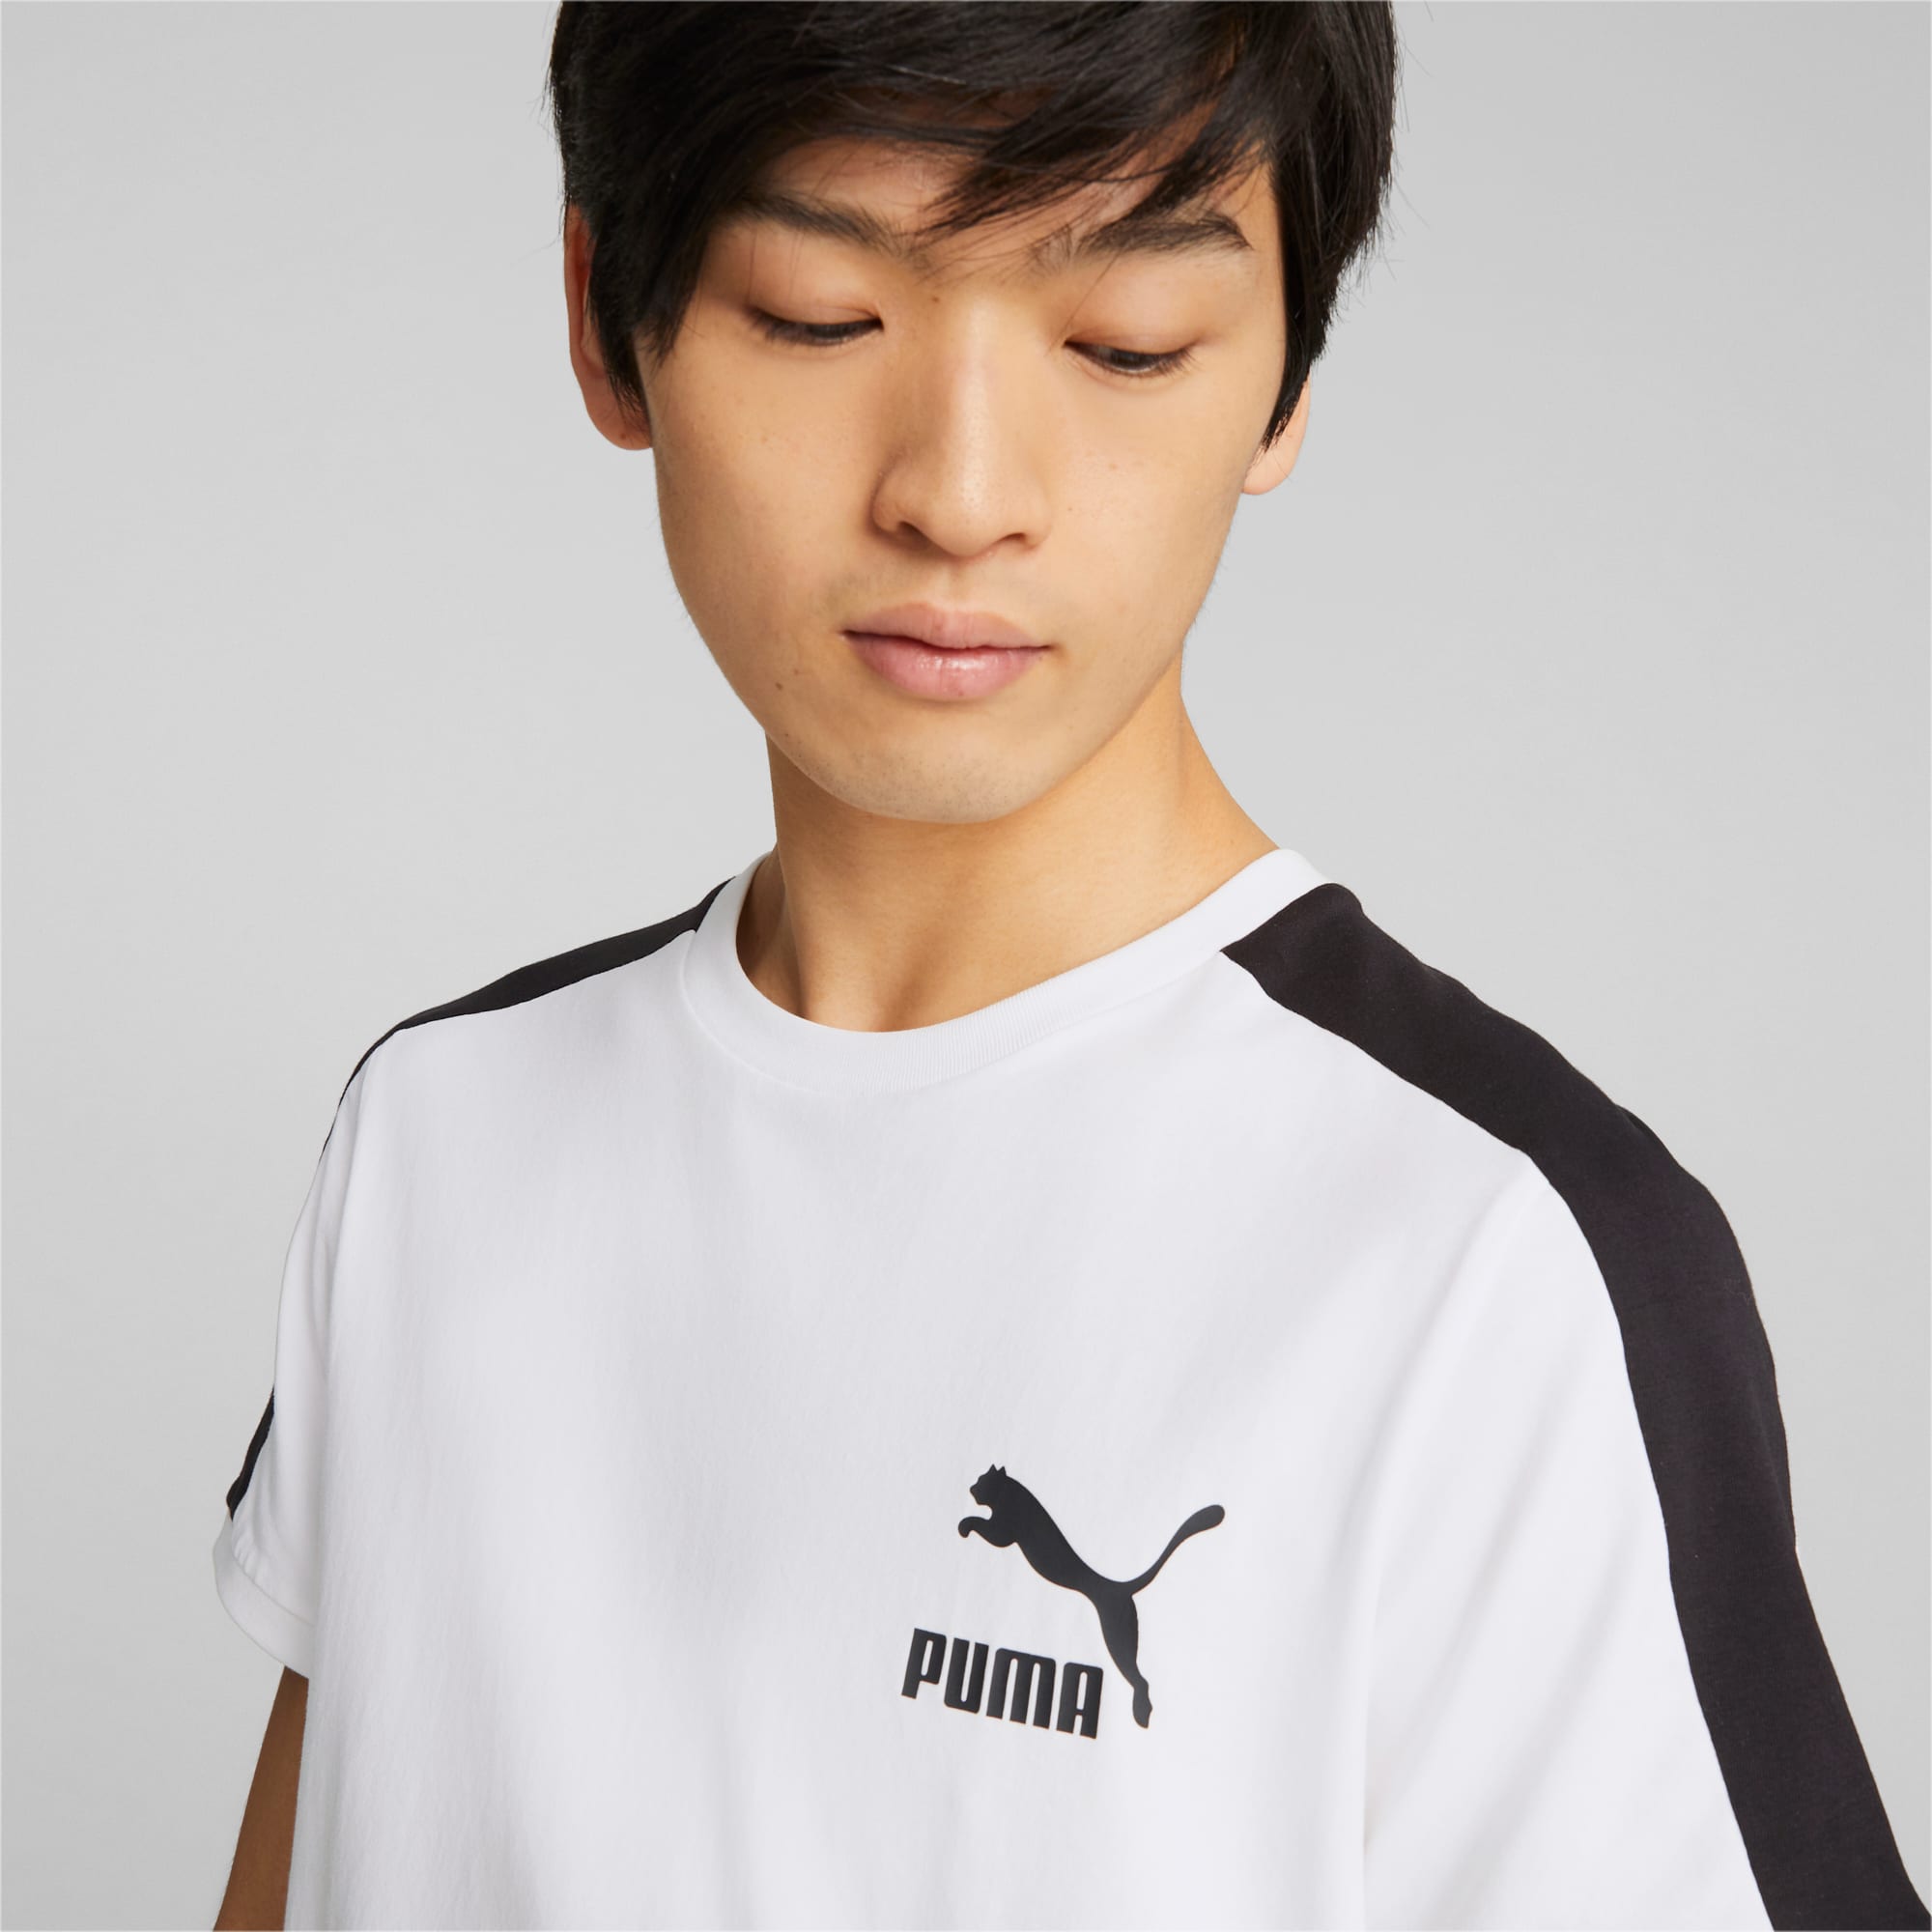 PUMA T7 Iconic T-Shirt Men, White, Size XS, Clothing